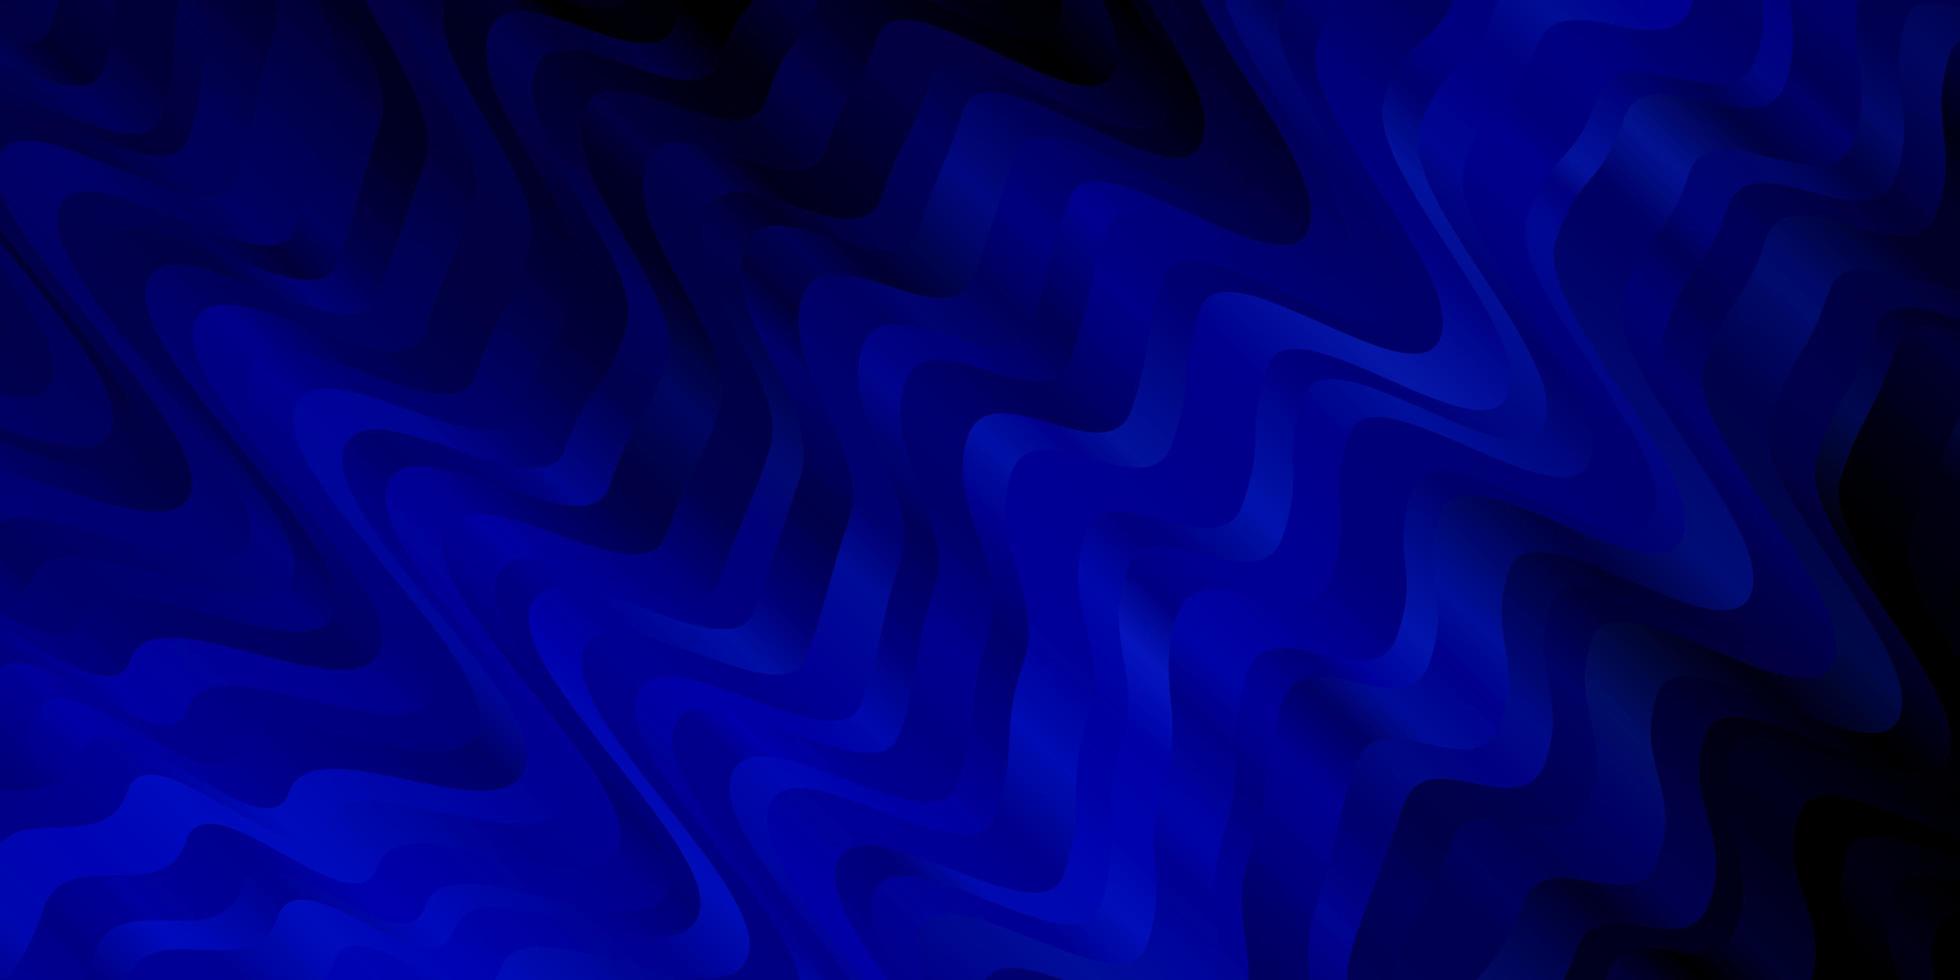 patrón de vector azul oscuro con líneas torcidas